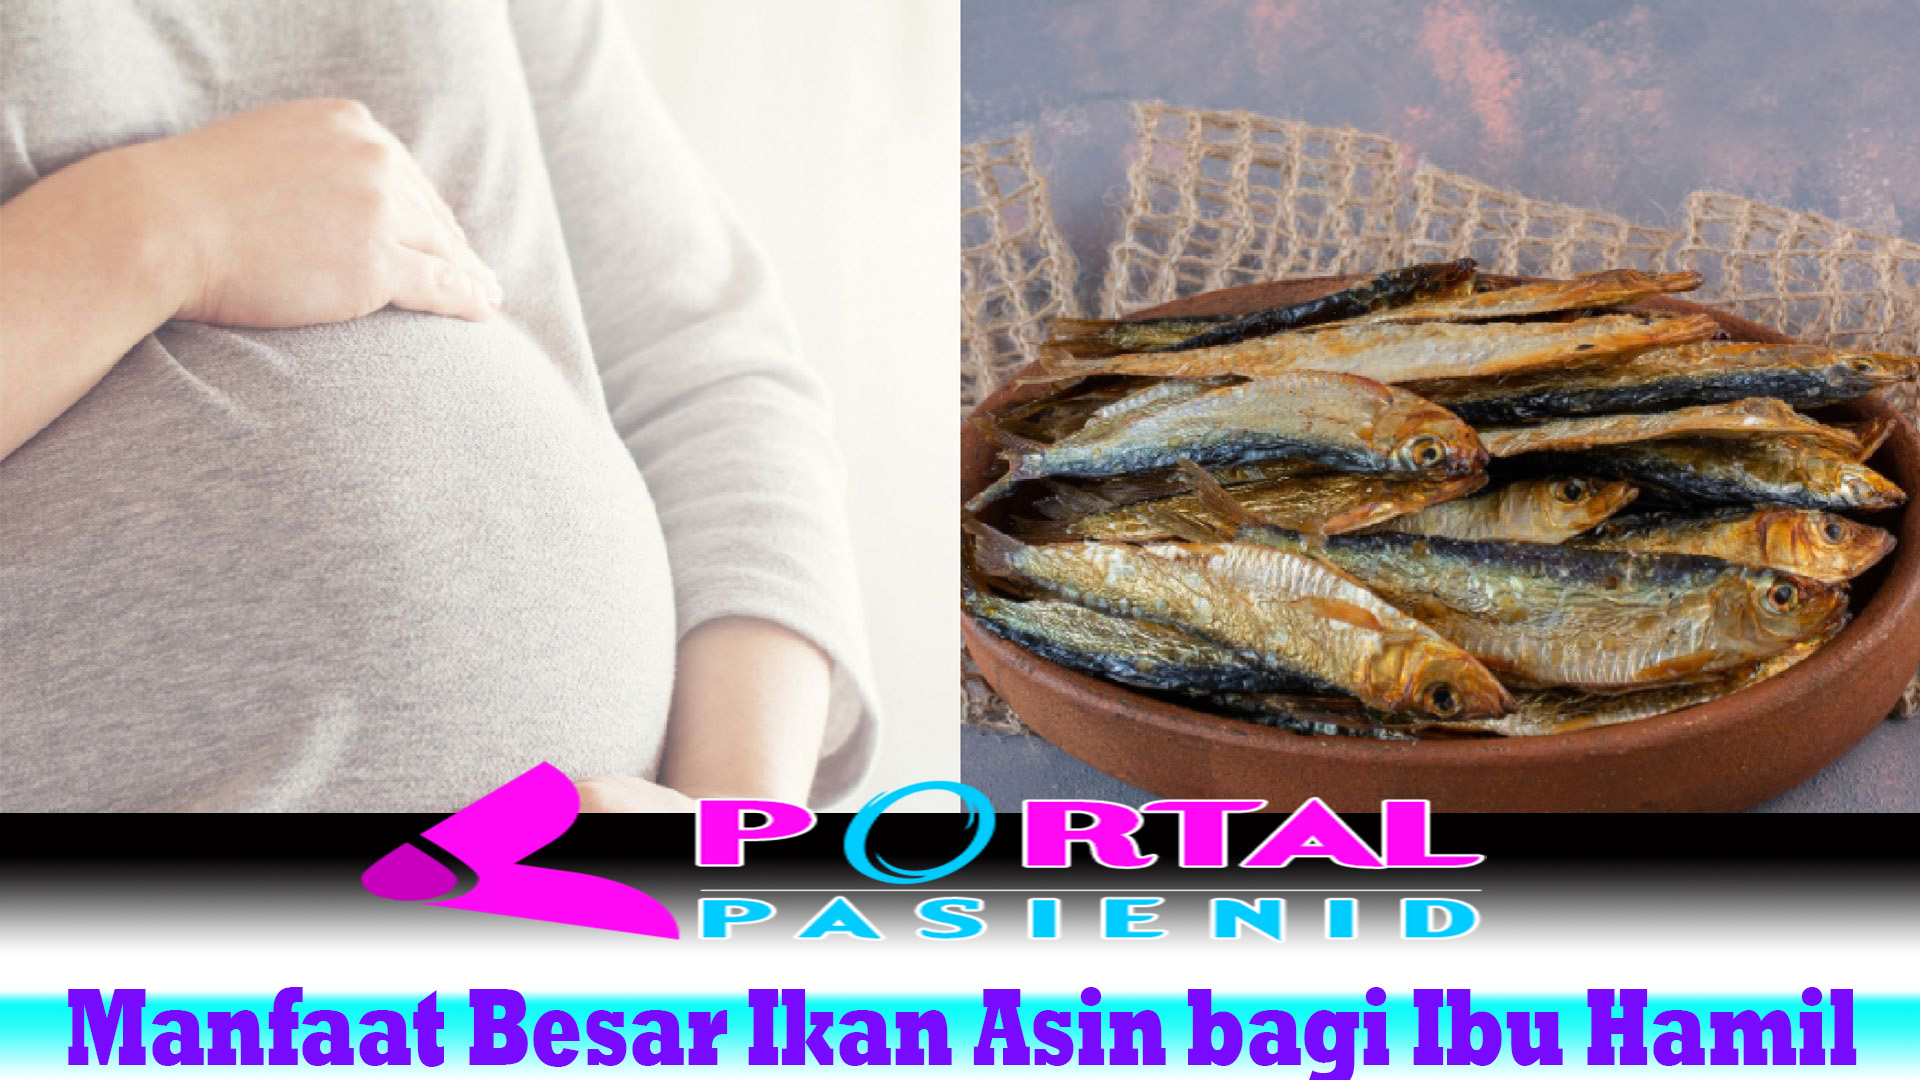 Manfaat Besar Ikan Asin bagi Ibu Hamil